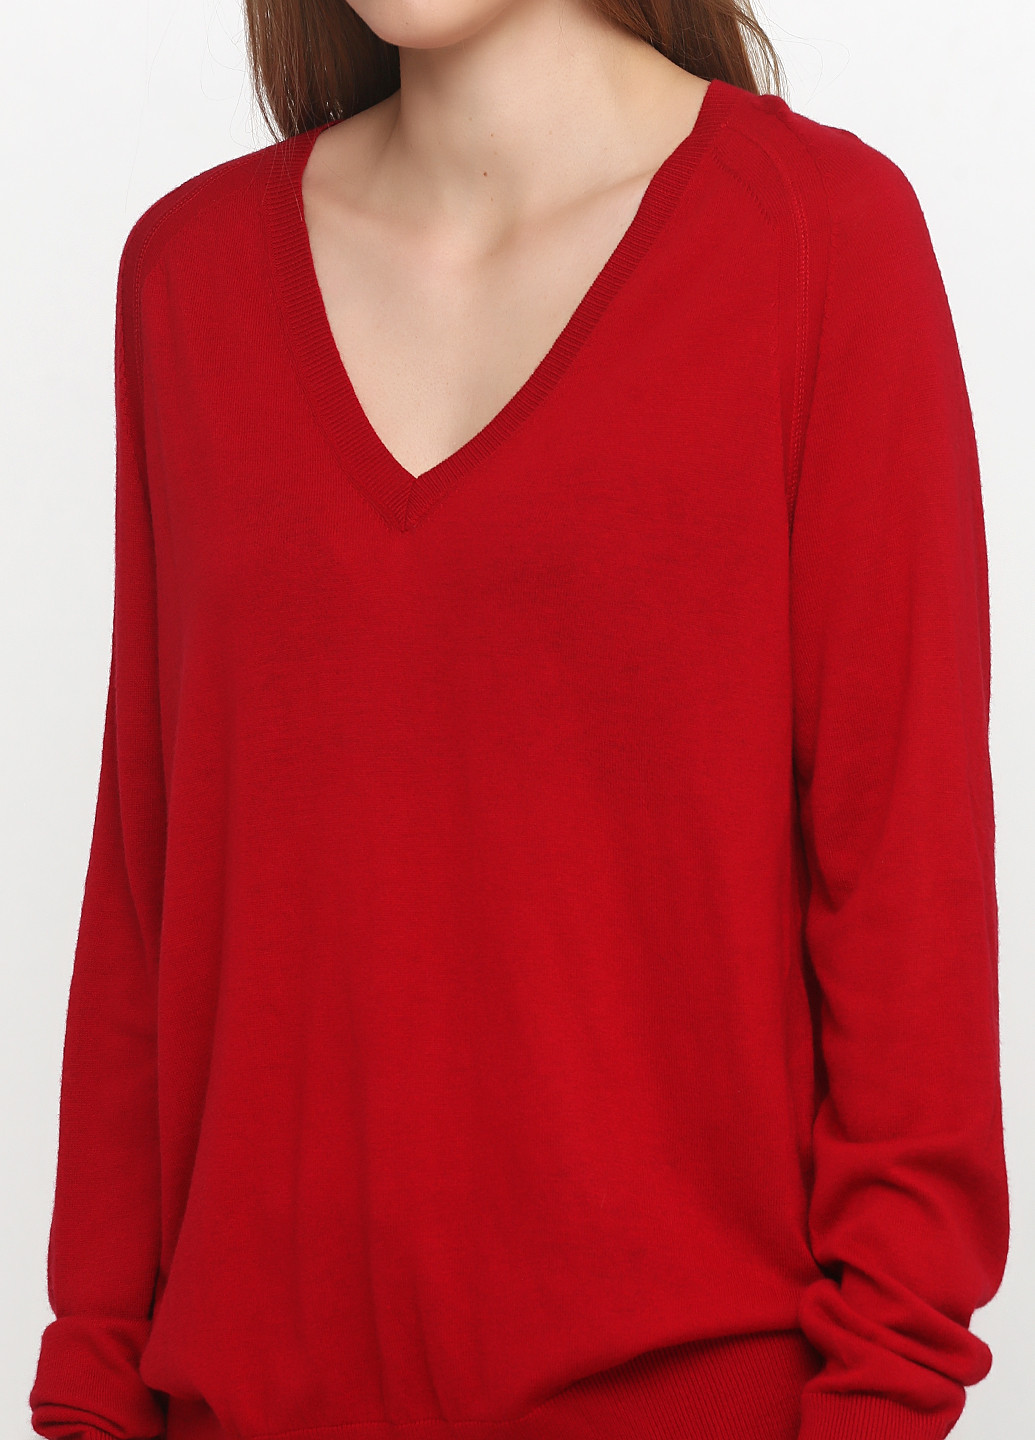 Красный демисезонный пуловер пуловер Paul & Joe